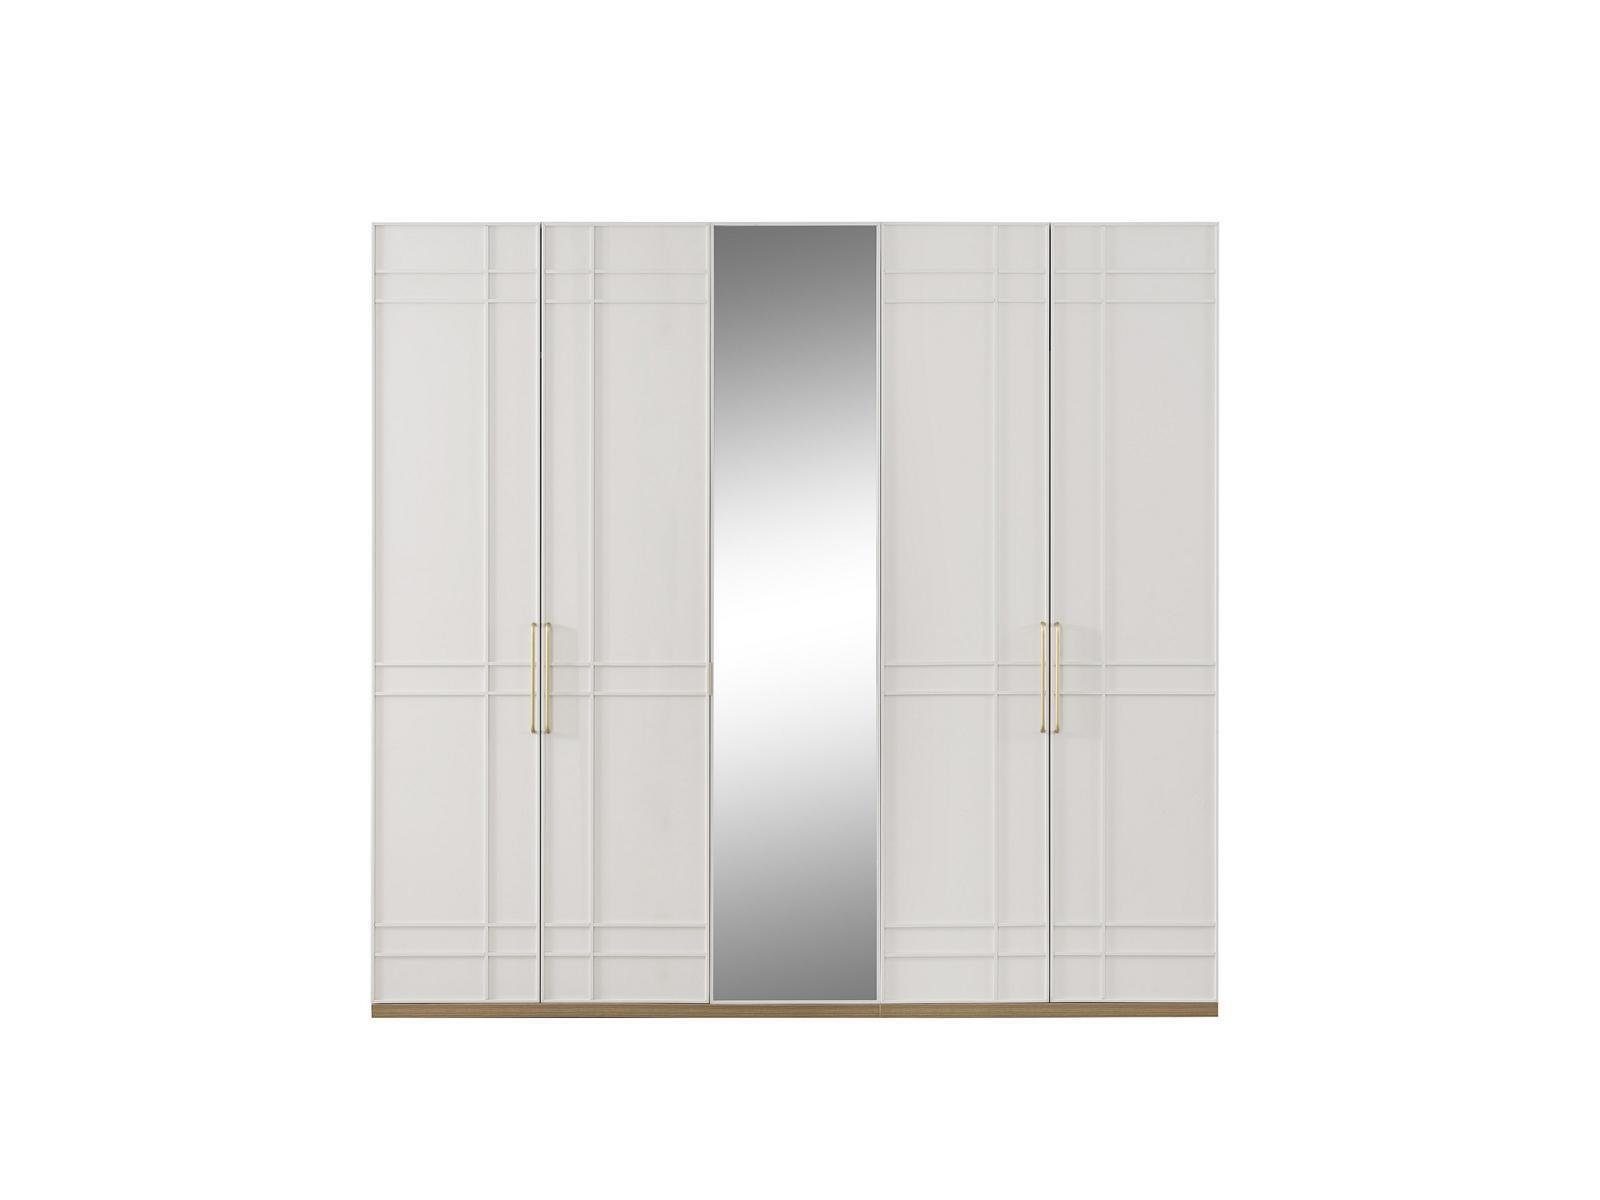 JVmoebel Kleiderschrank Kleiderschränke Kleiderschrank Schränke Weiß Holz Spiegel 5 Türen Neu (Kleiderschrank) Made In Europe